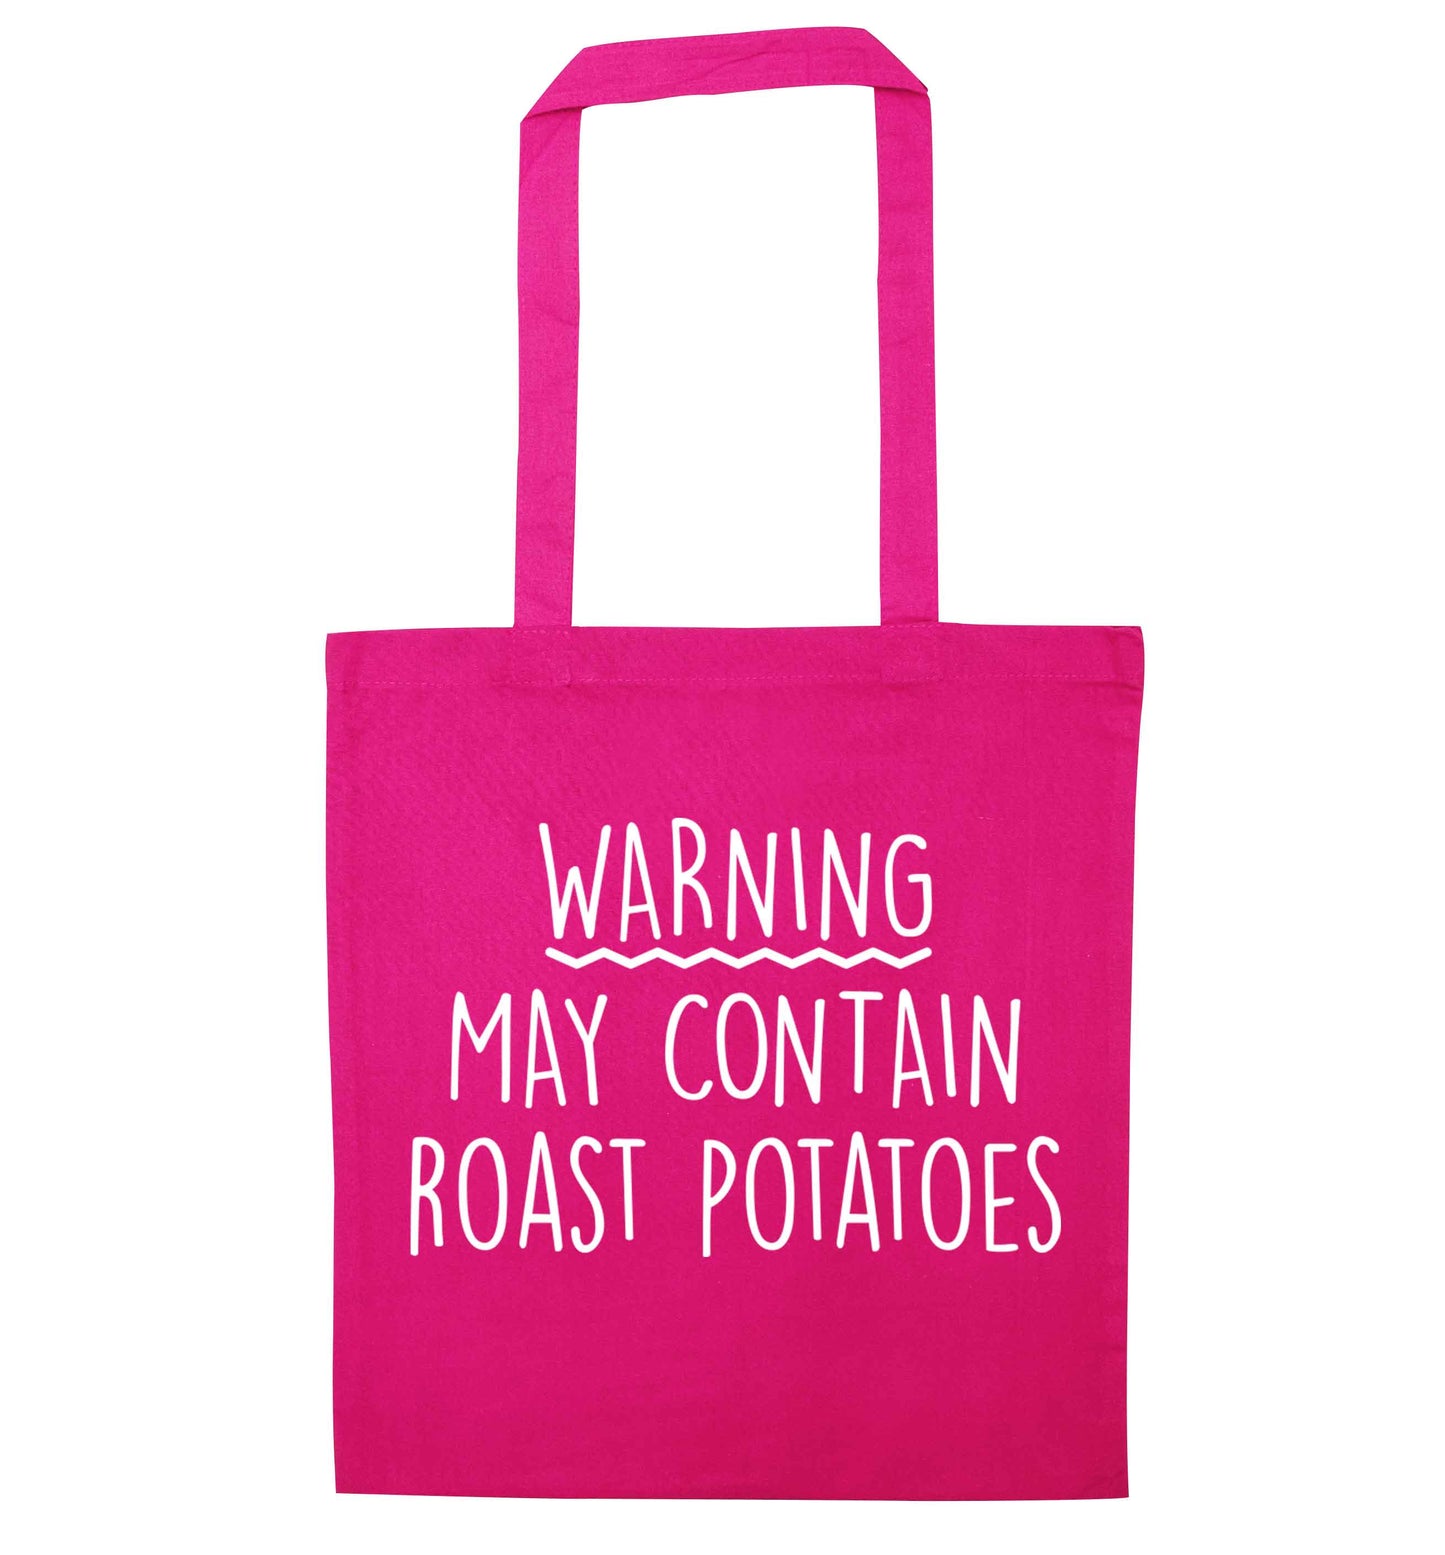 Warning may containg roast potatoes pink tote bag